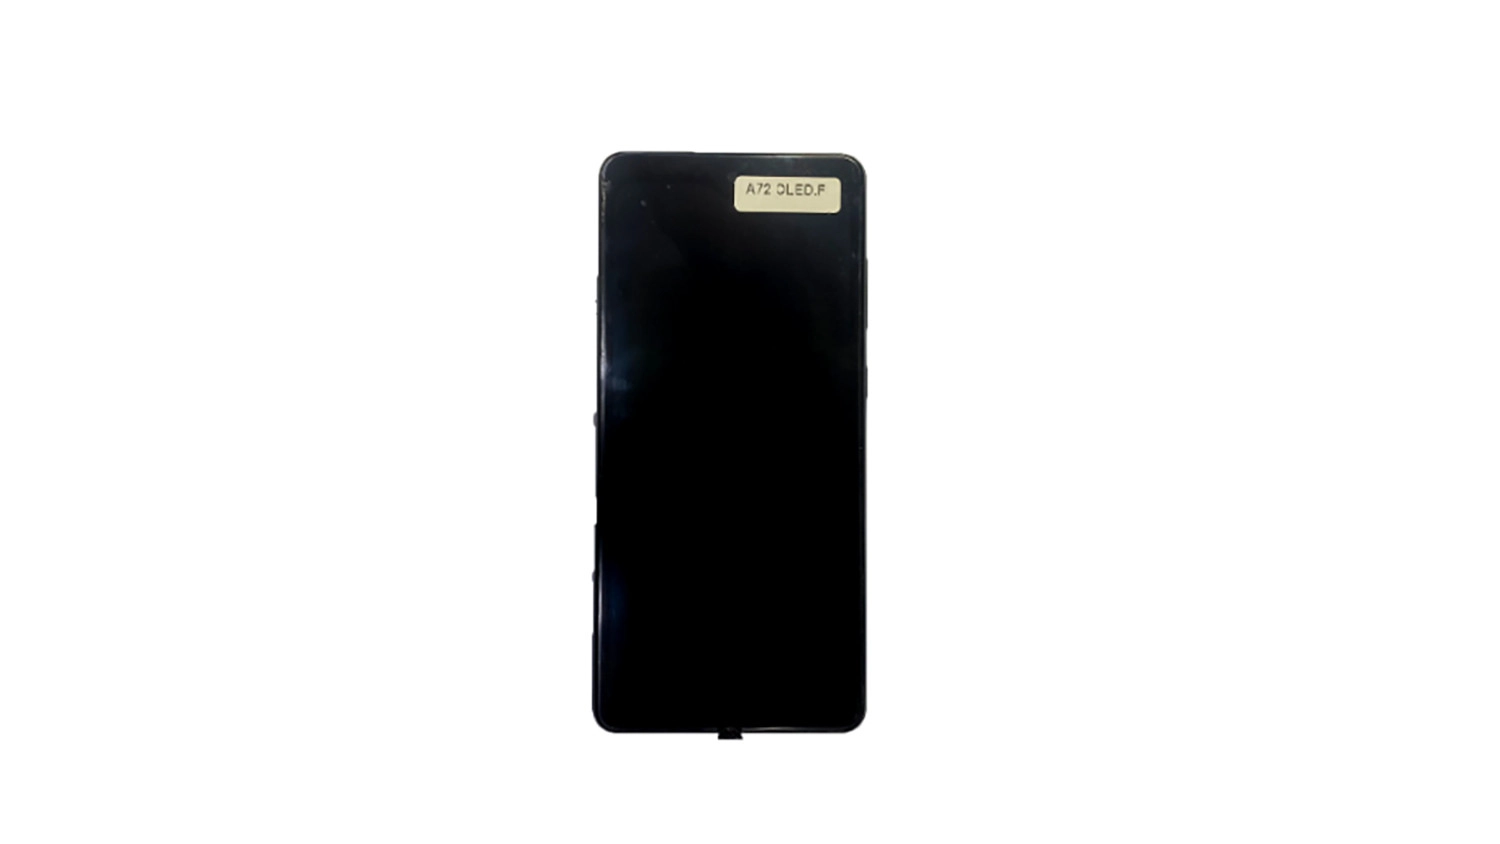 Màn hình Samsung Galaxy A72 OLED 2IC